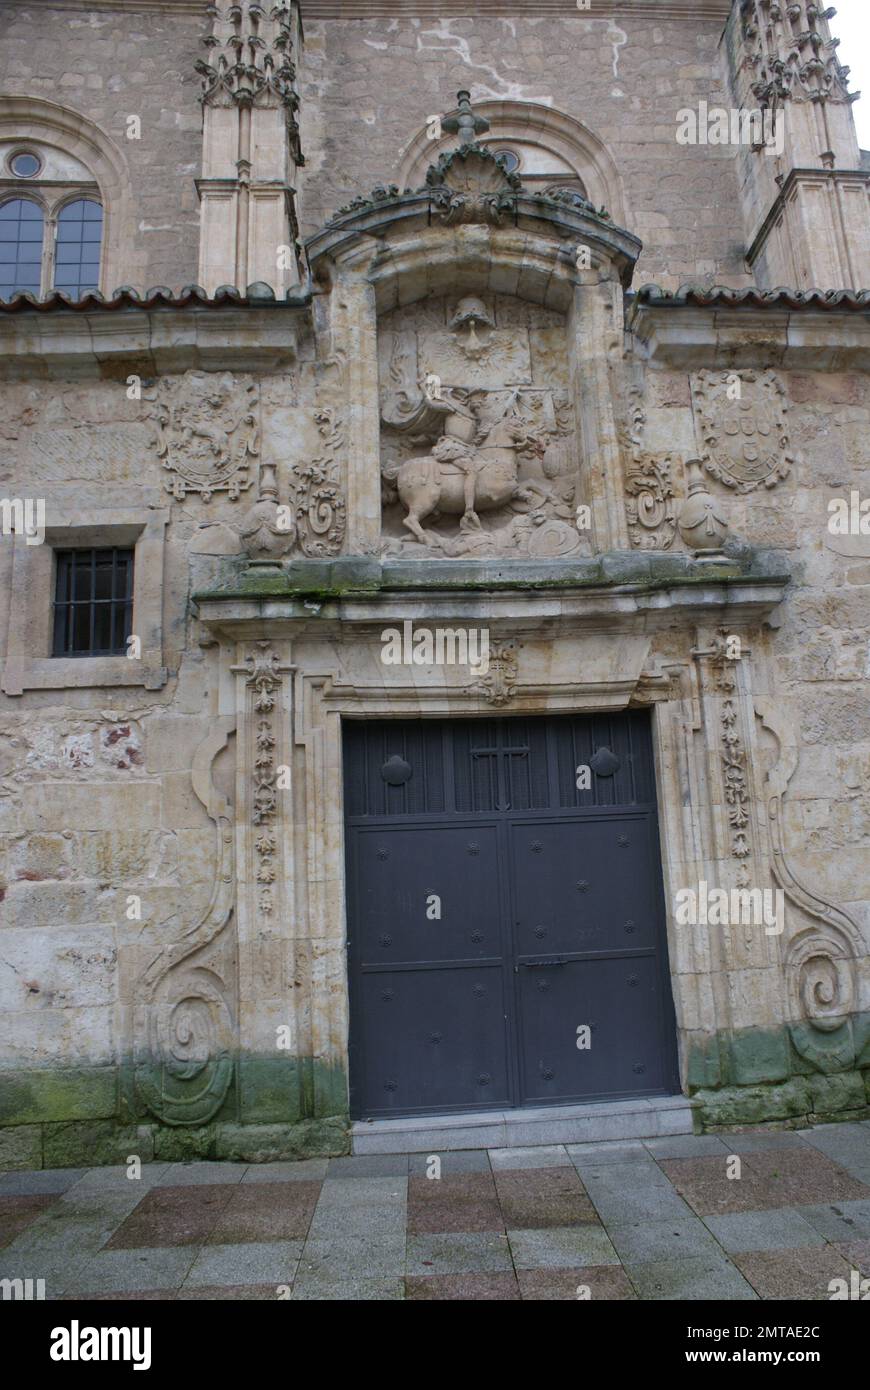 La Iglesia de Sancti Spiritus de Salamanca, es un templo católico perteneciente al estilo del gótico tardío, y es el único resto que sobrevive en la a Stock Photo